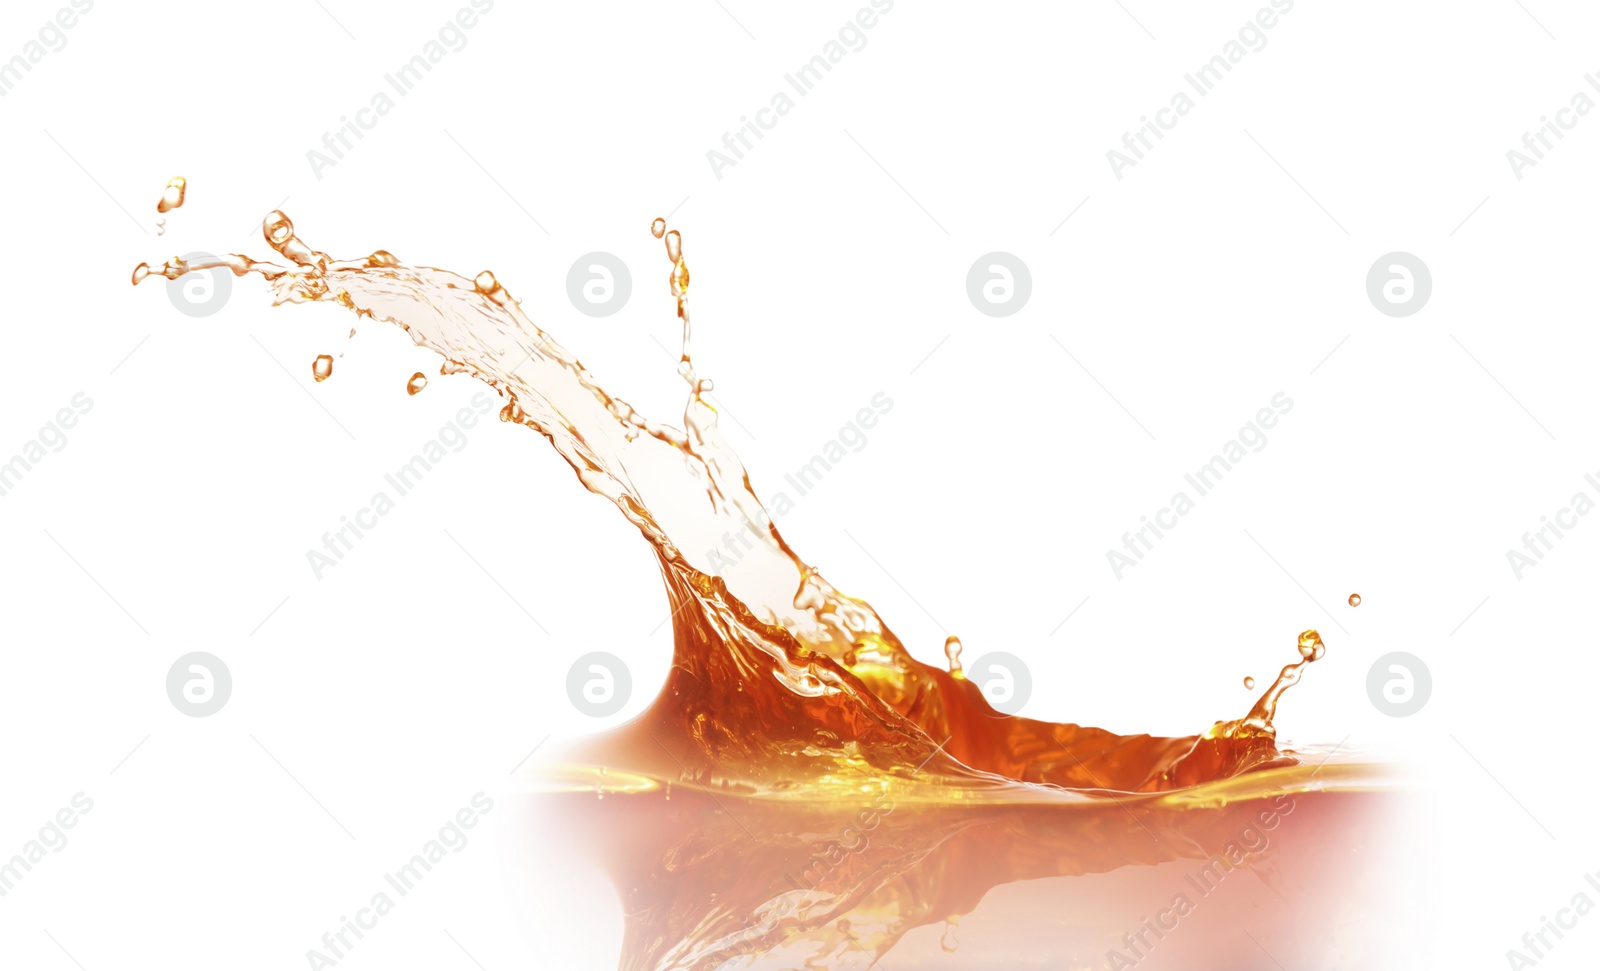 Photo of Splashing tasty fresh juice on white background